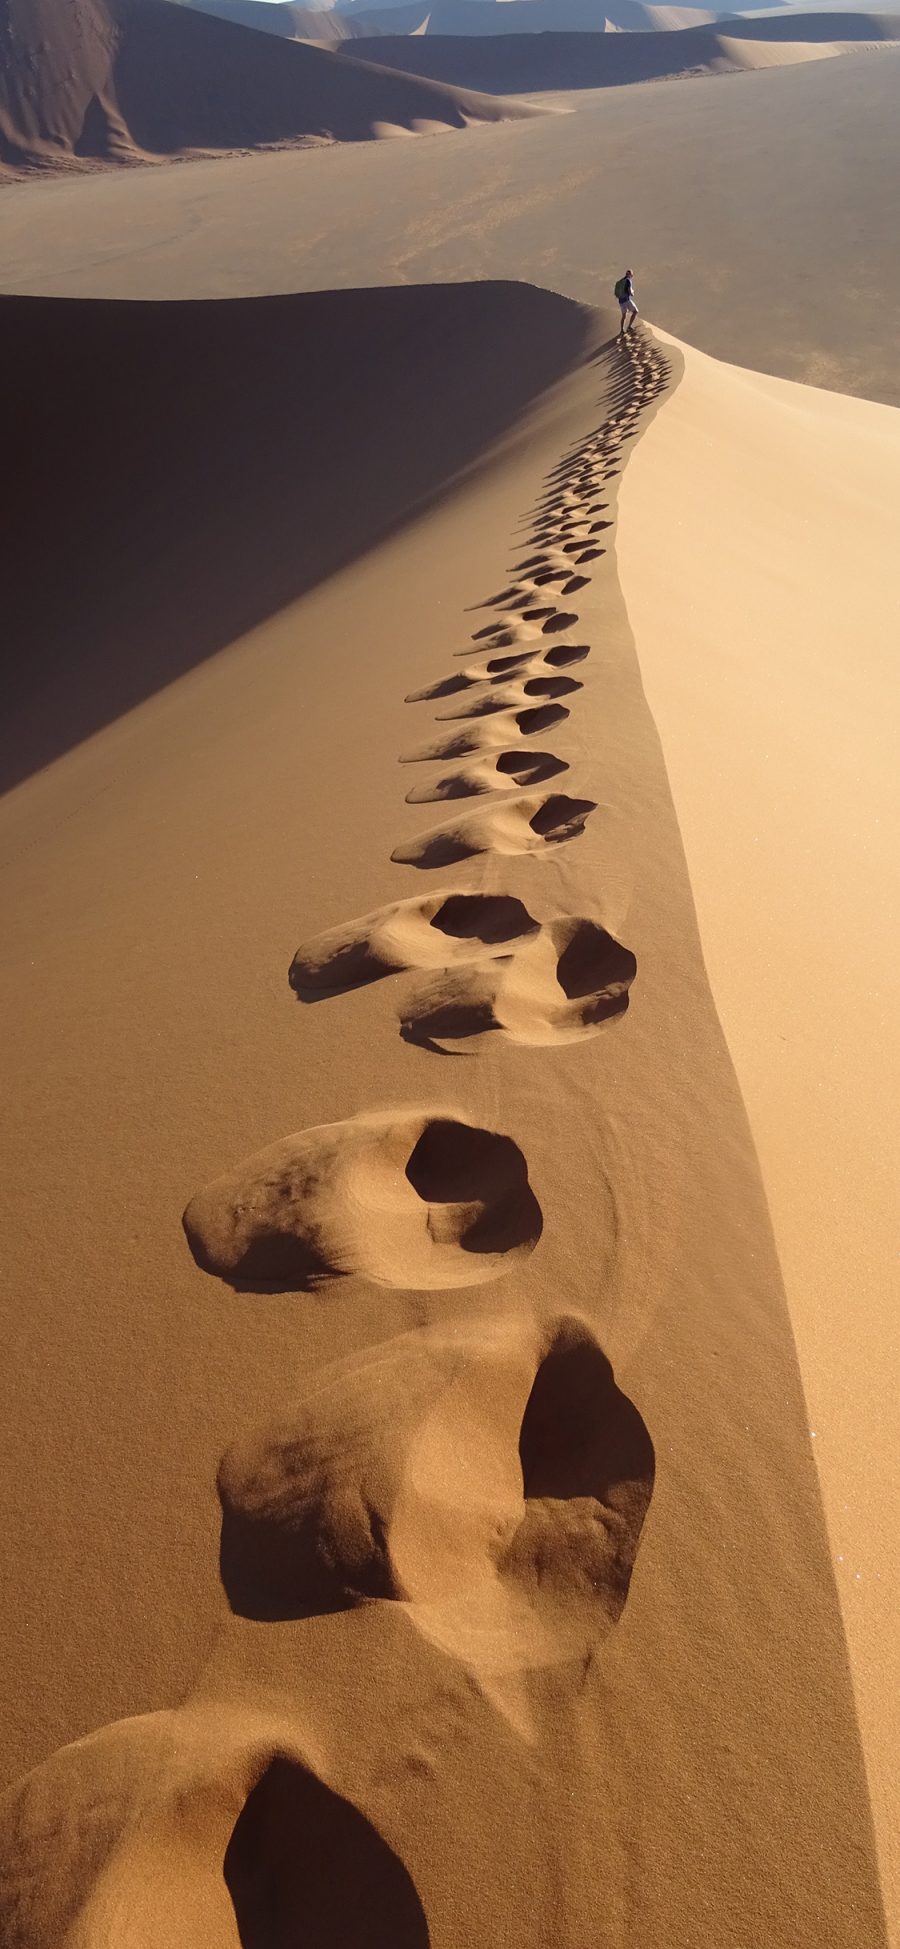 [2436×1125]沙漠 荒芜 脚印 黄沙 苹果手机壁纸图片